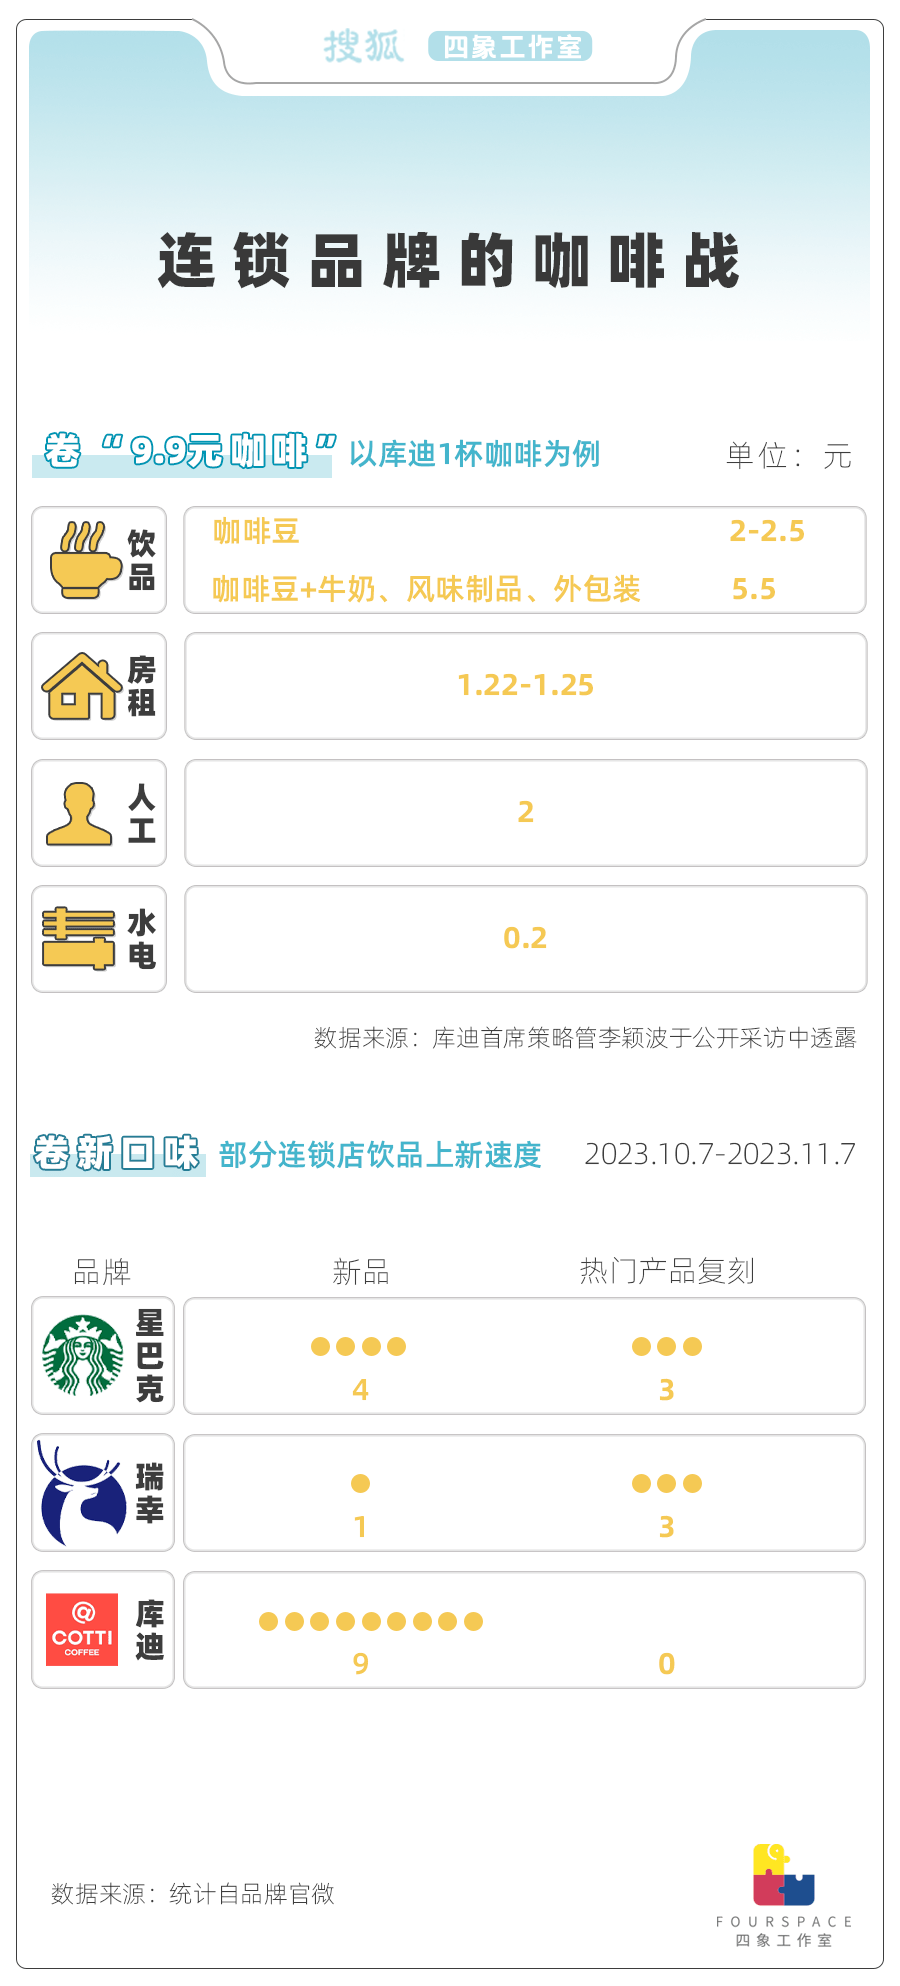 咖啡9.9元价格战：巨头赚麻了 小店成炮灰？